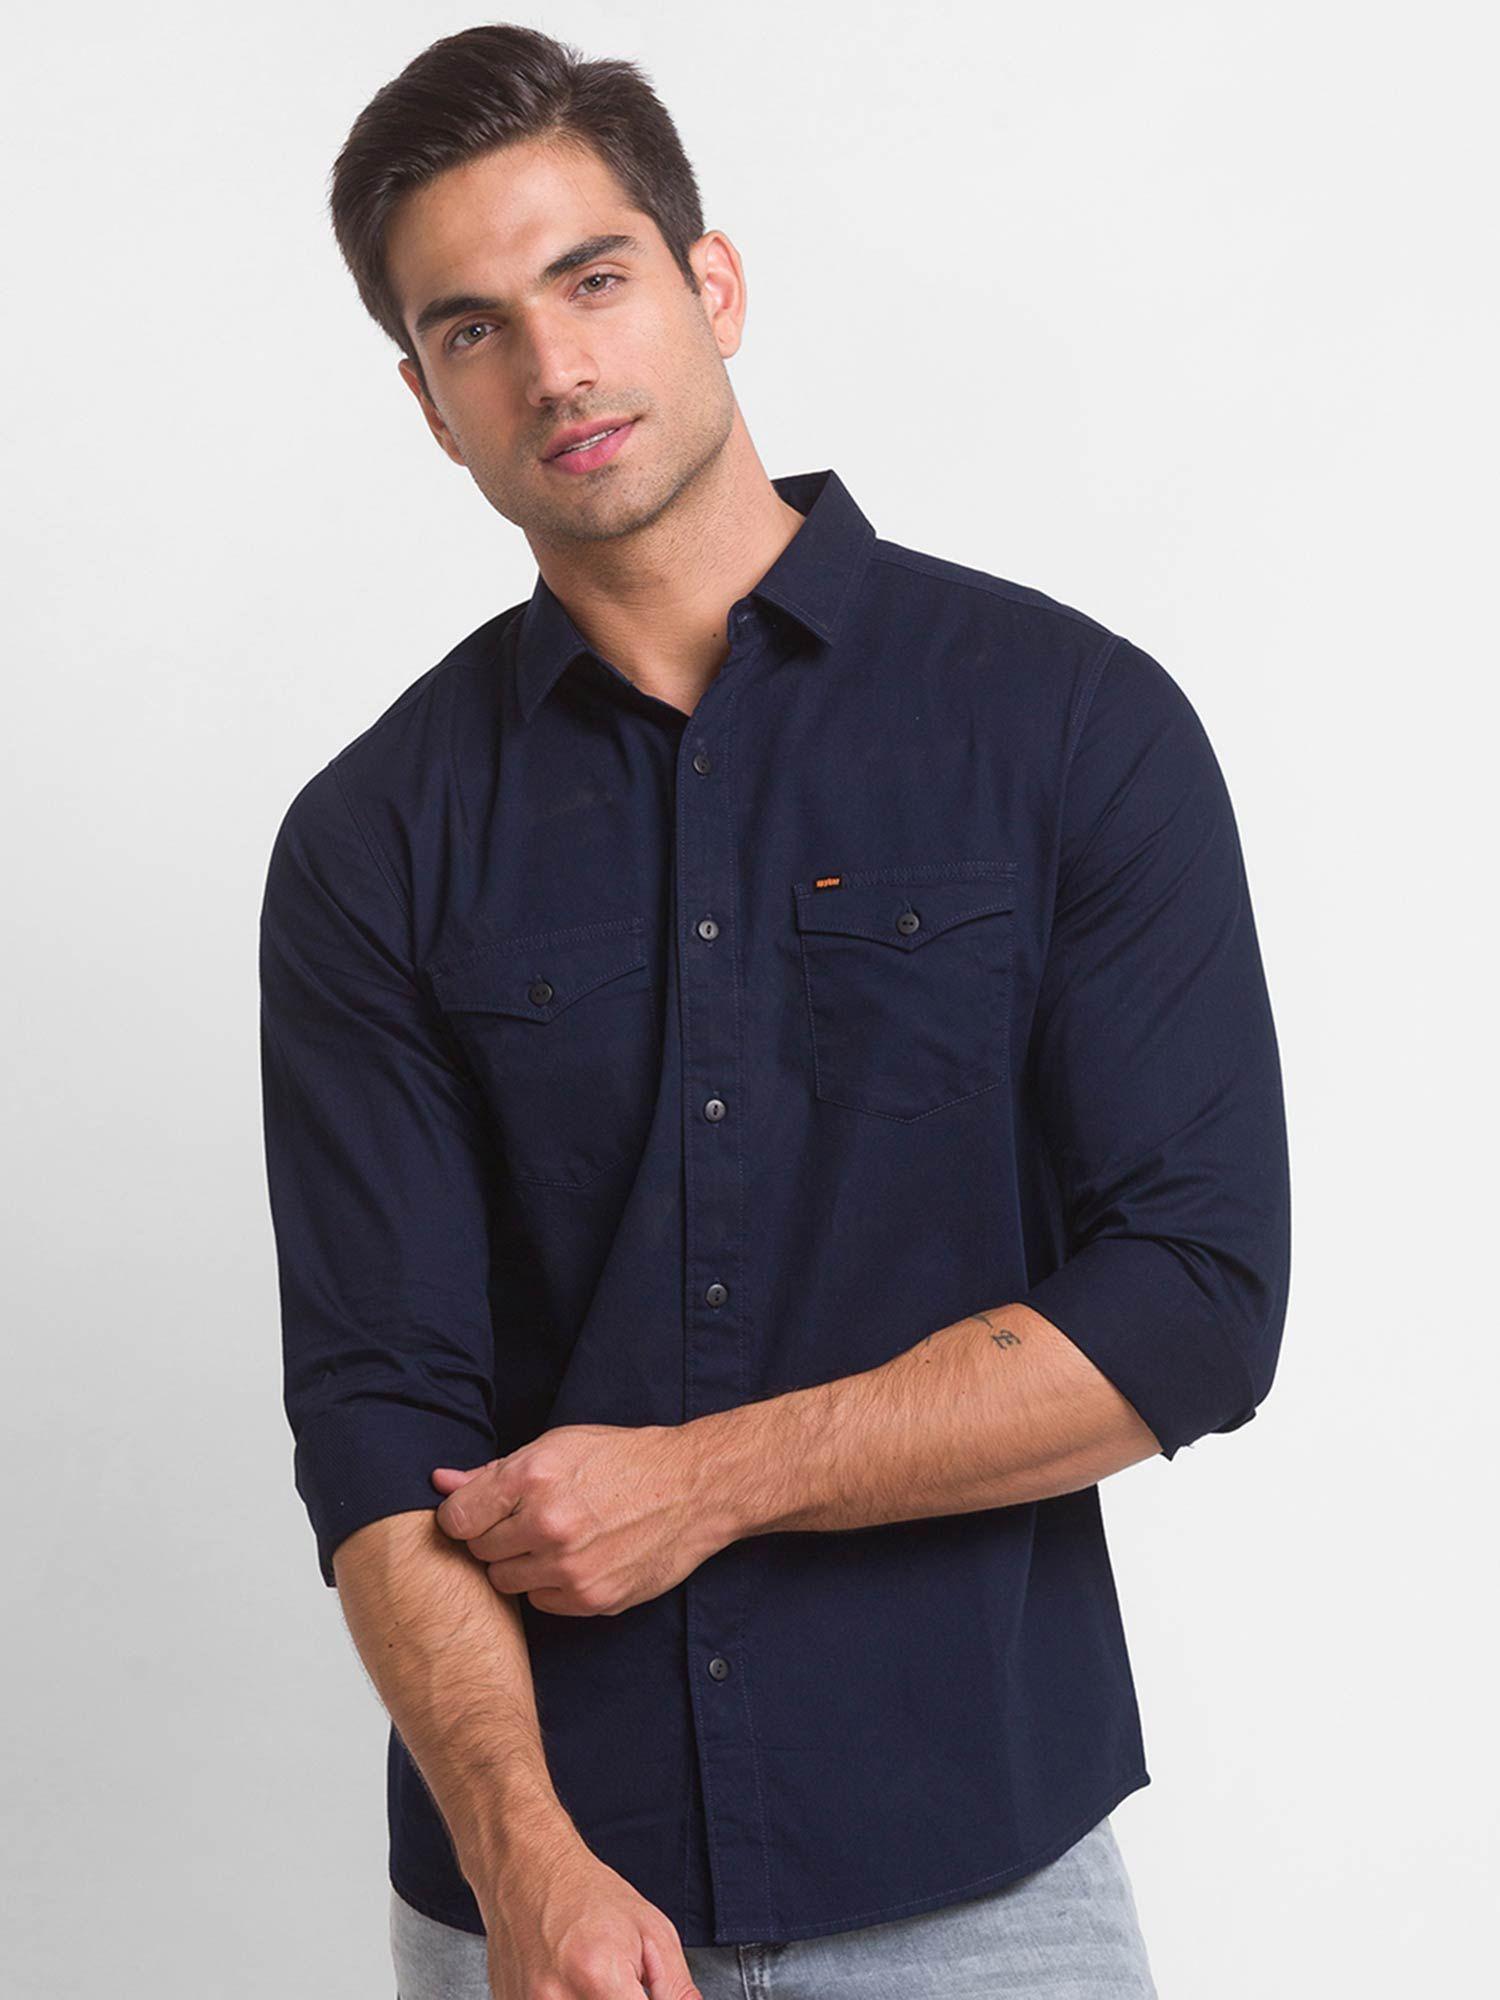 navy blue cotton full sleeve plain shirt for men